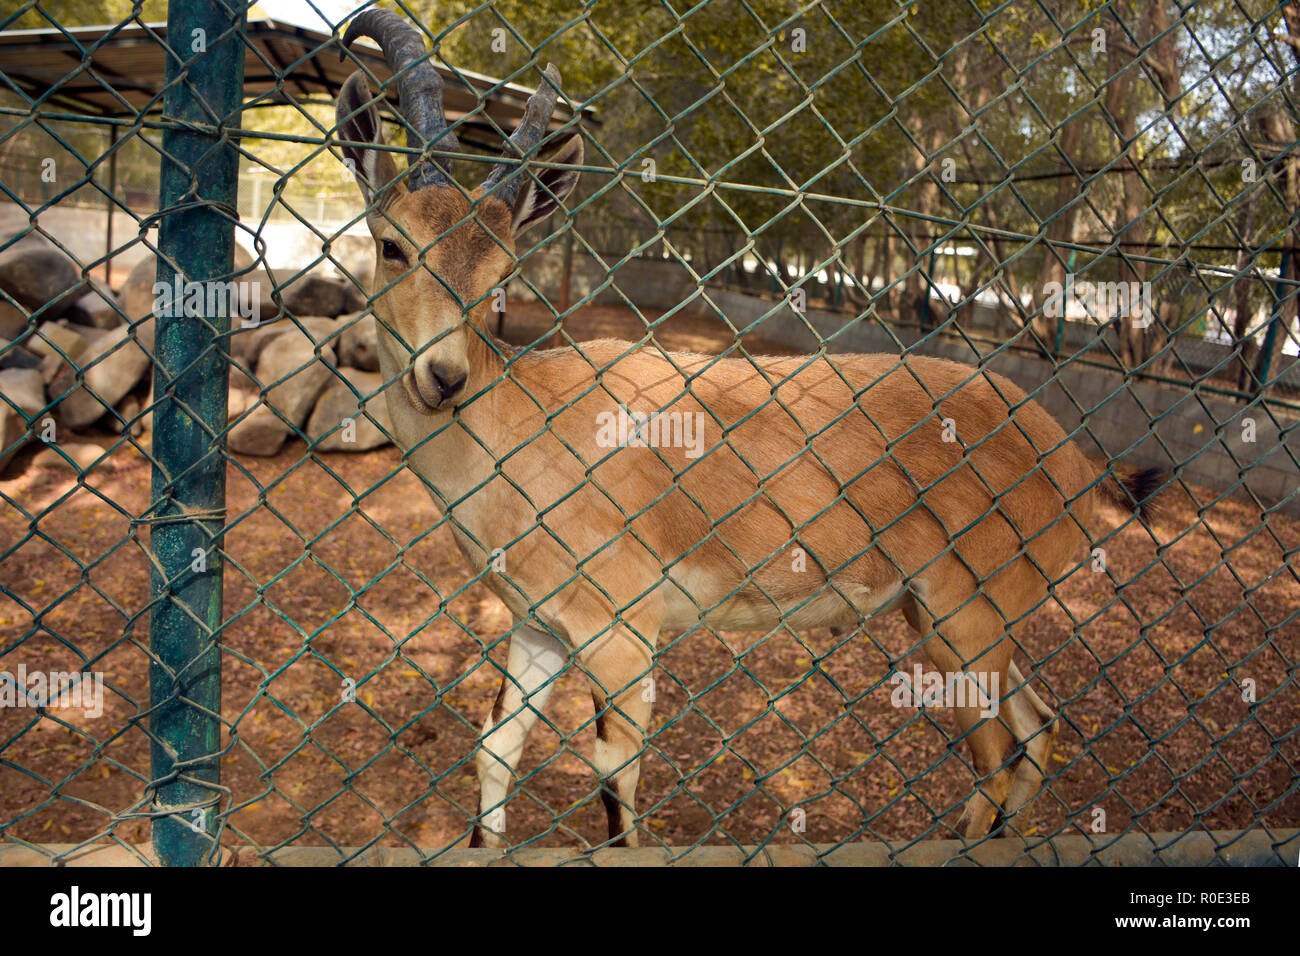 Deer in zoo Stock Photo